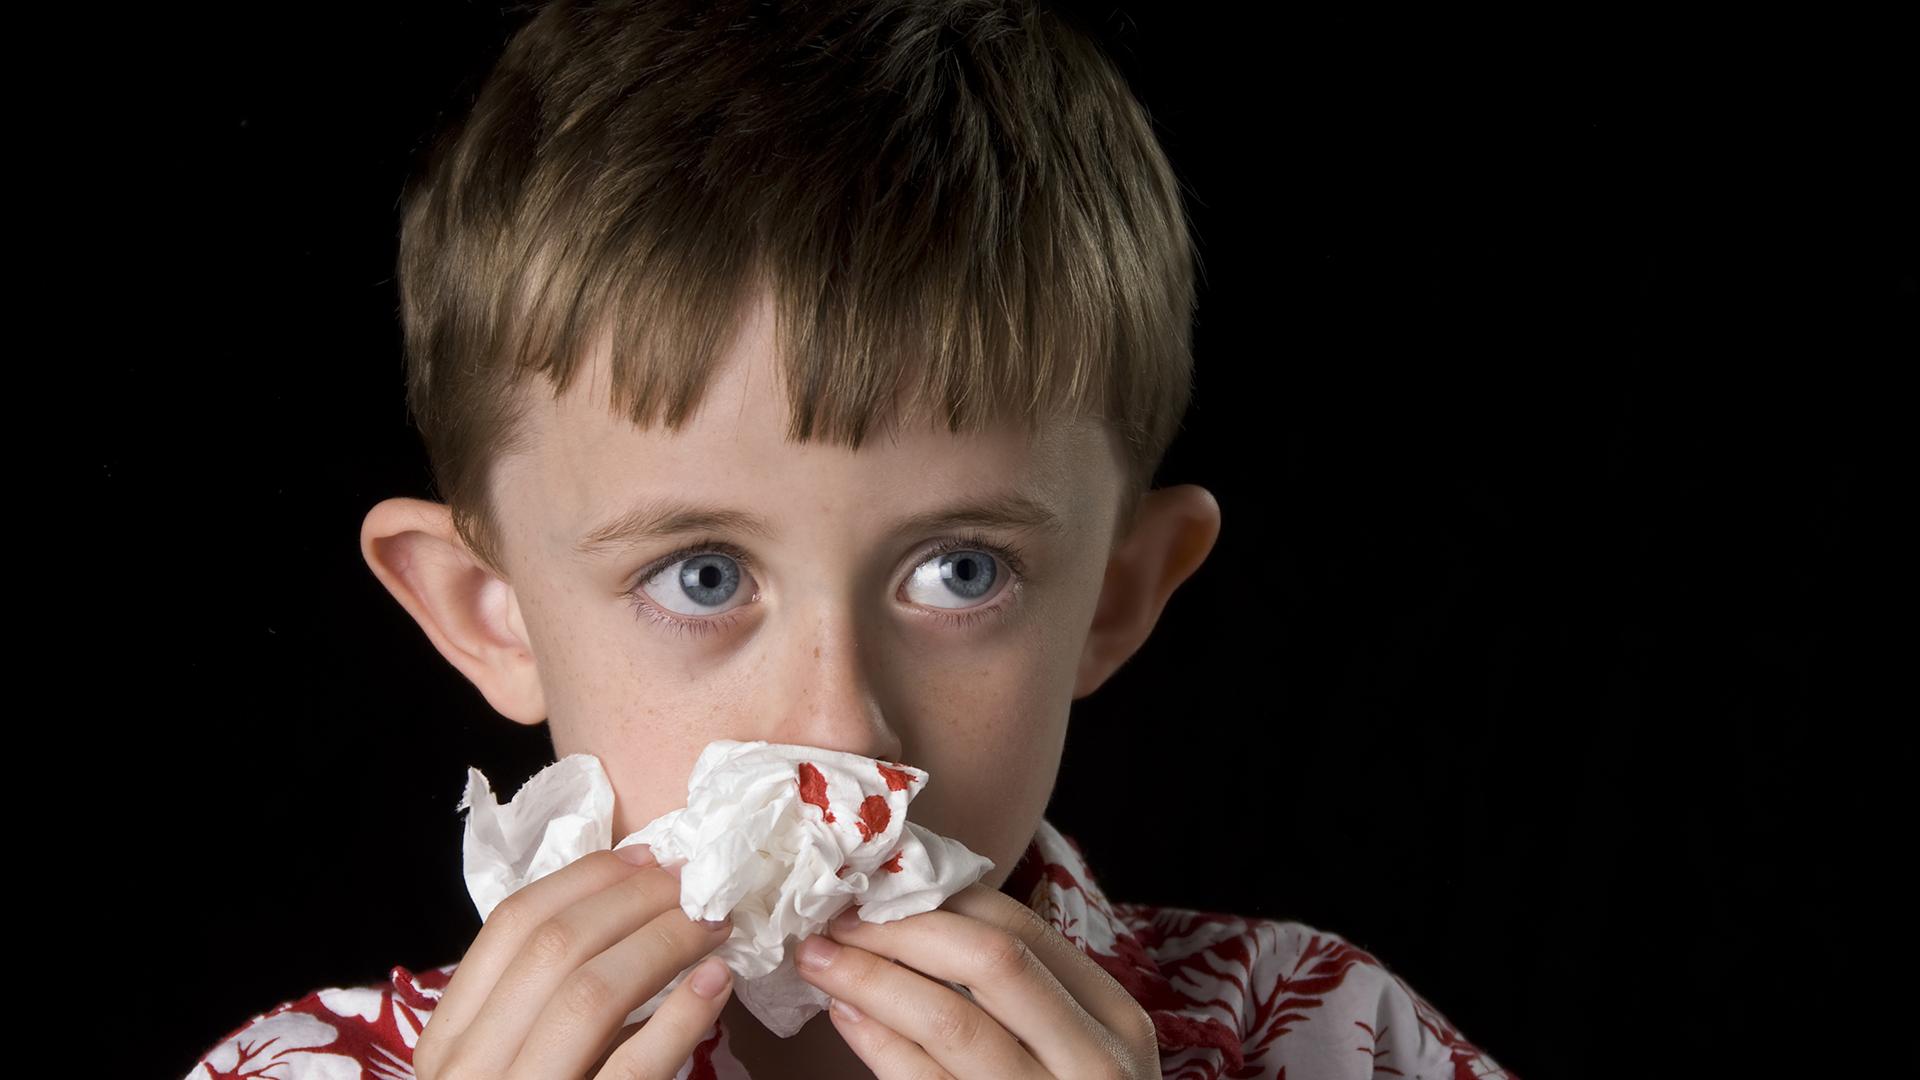 Кровотечение из носа у детей